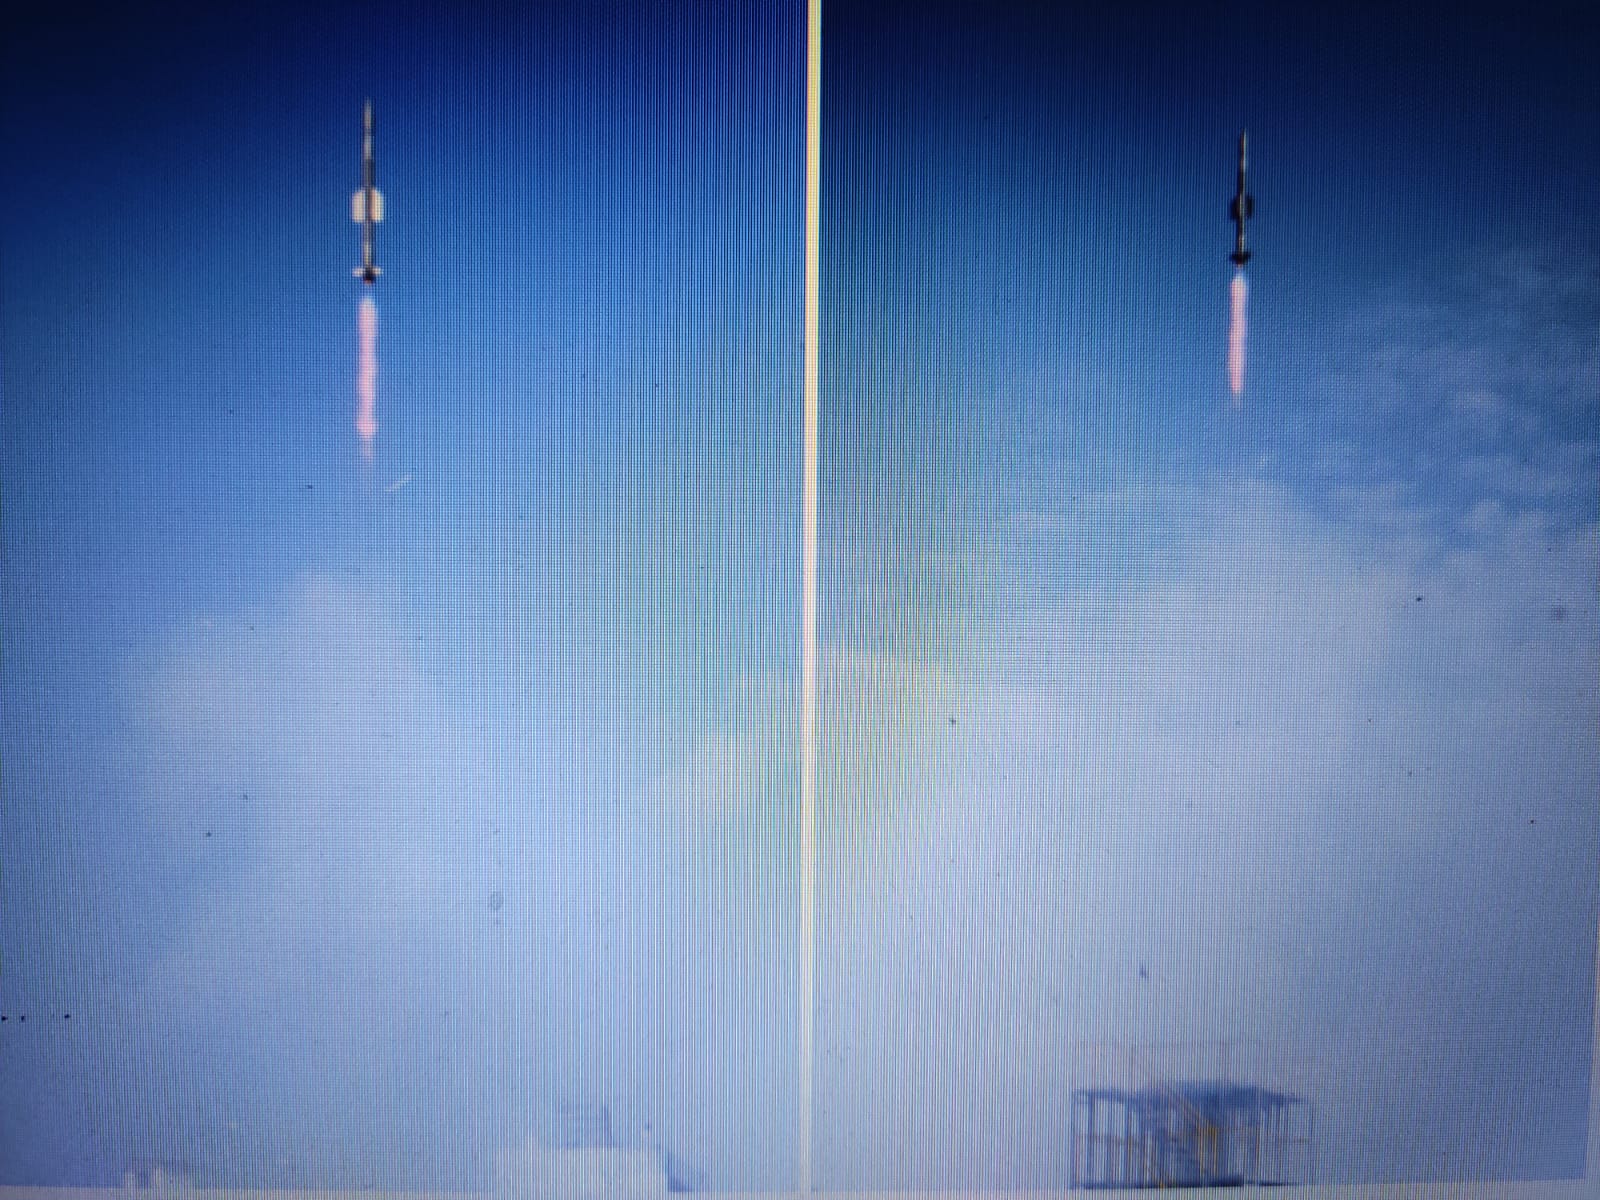 सतह से हवा में वार करने वाली मिसाइल का सफल परीक्षण